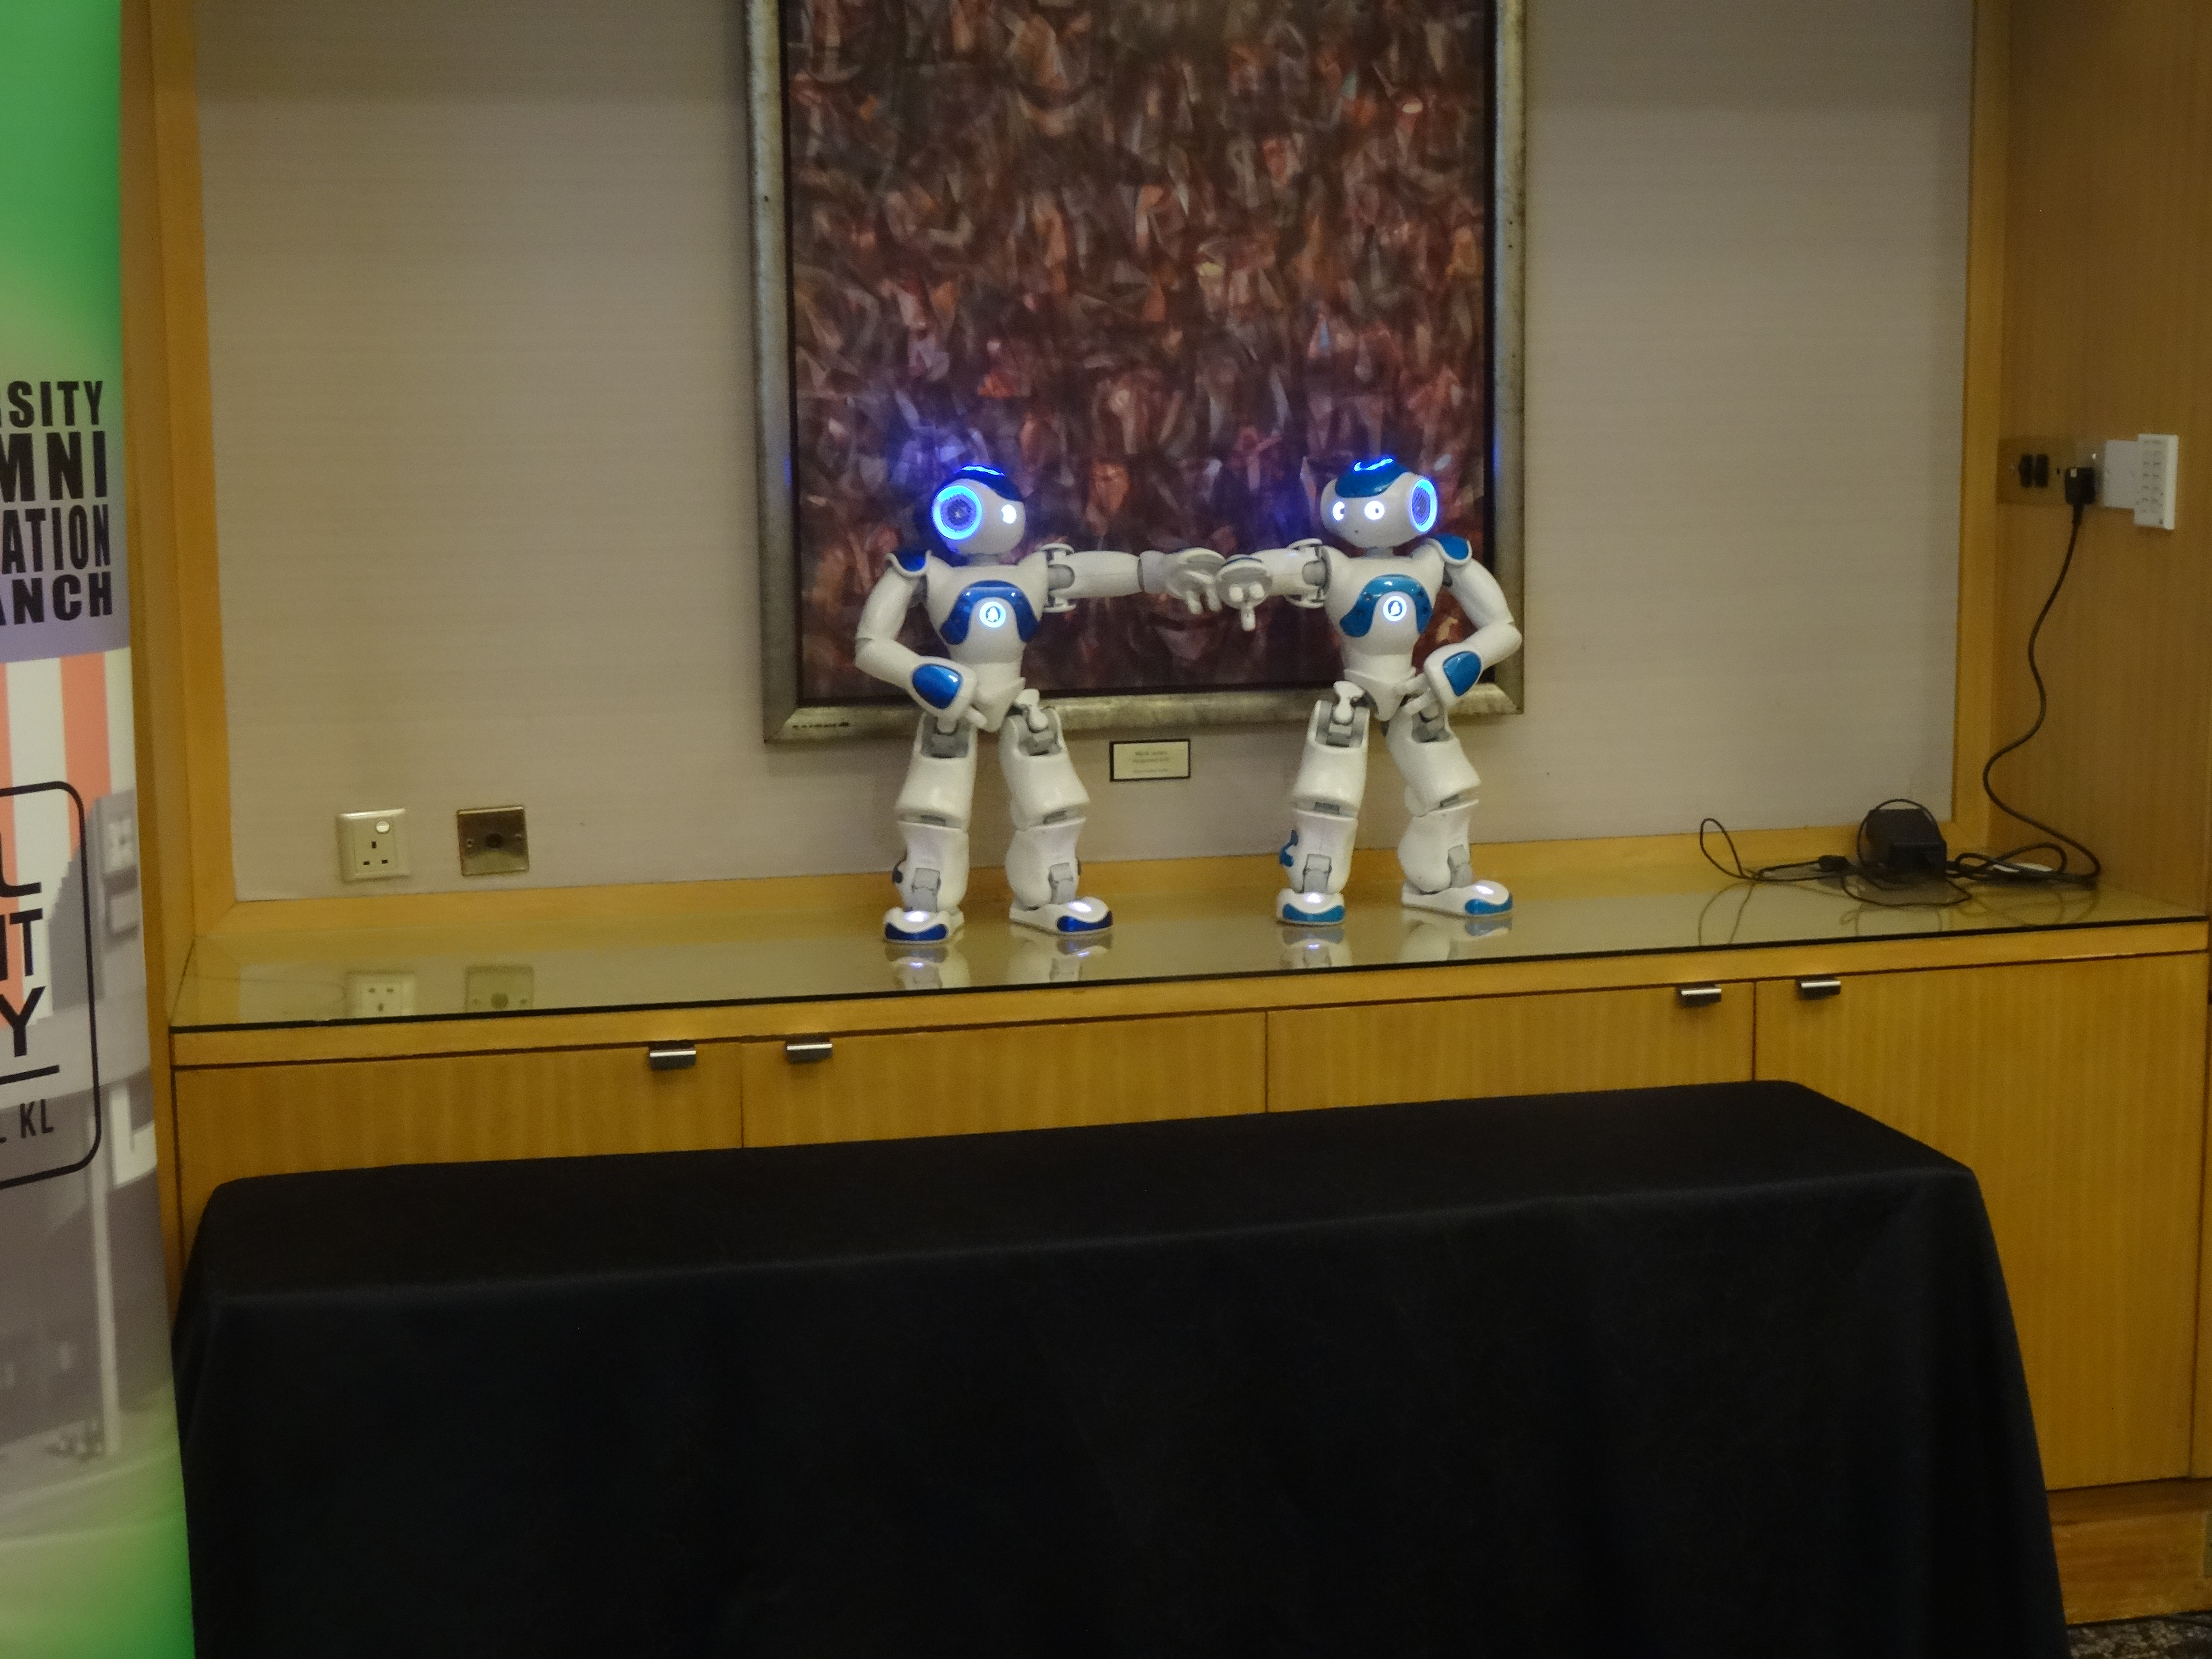 ロボットダンス